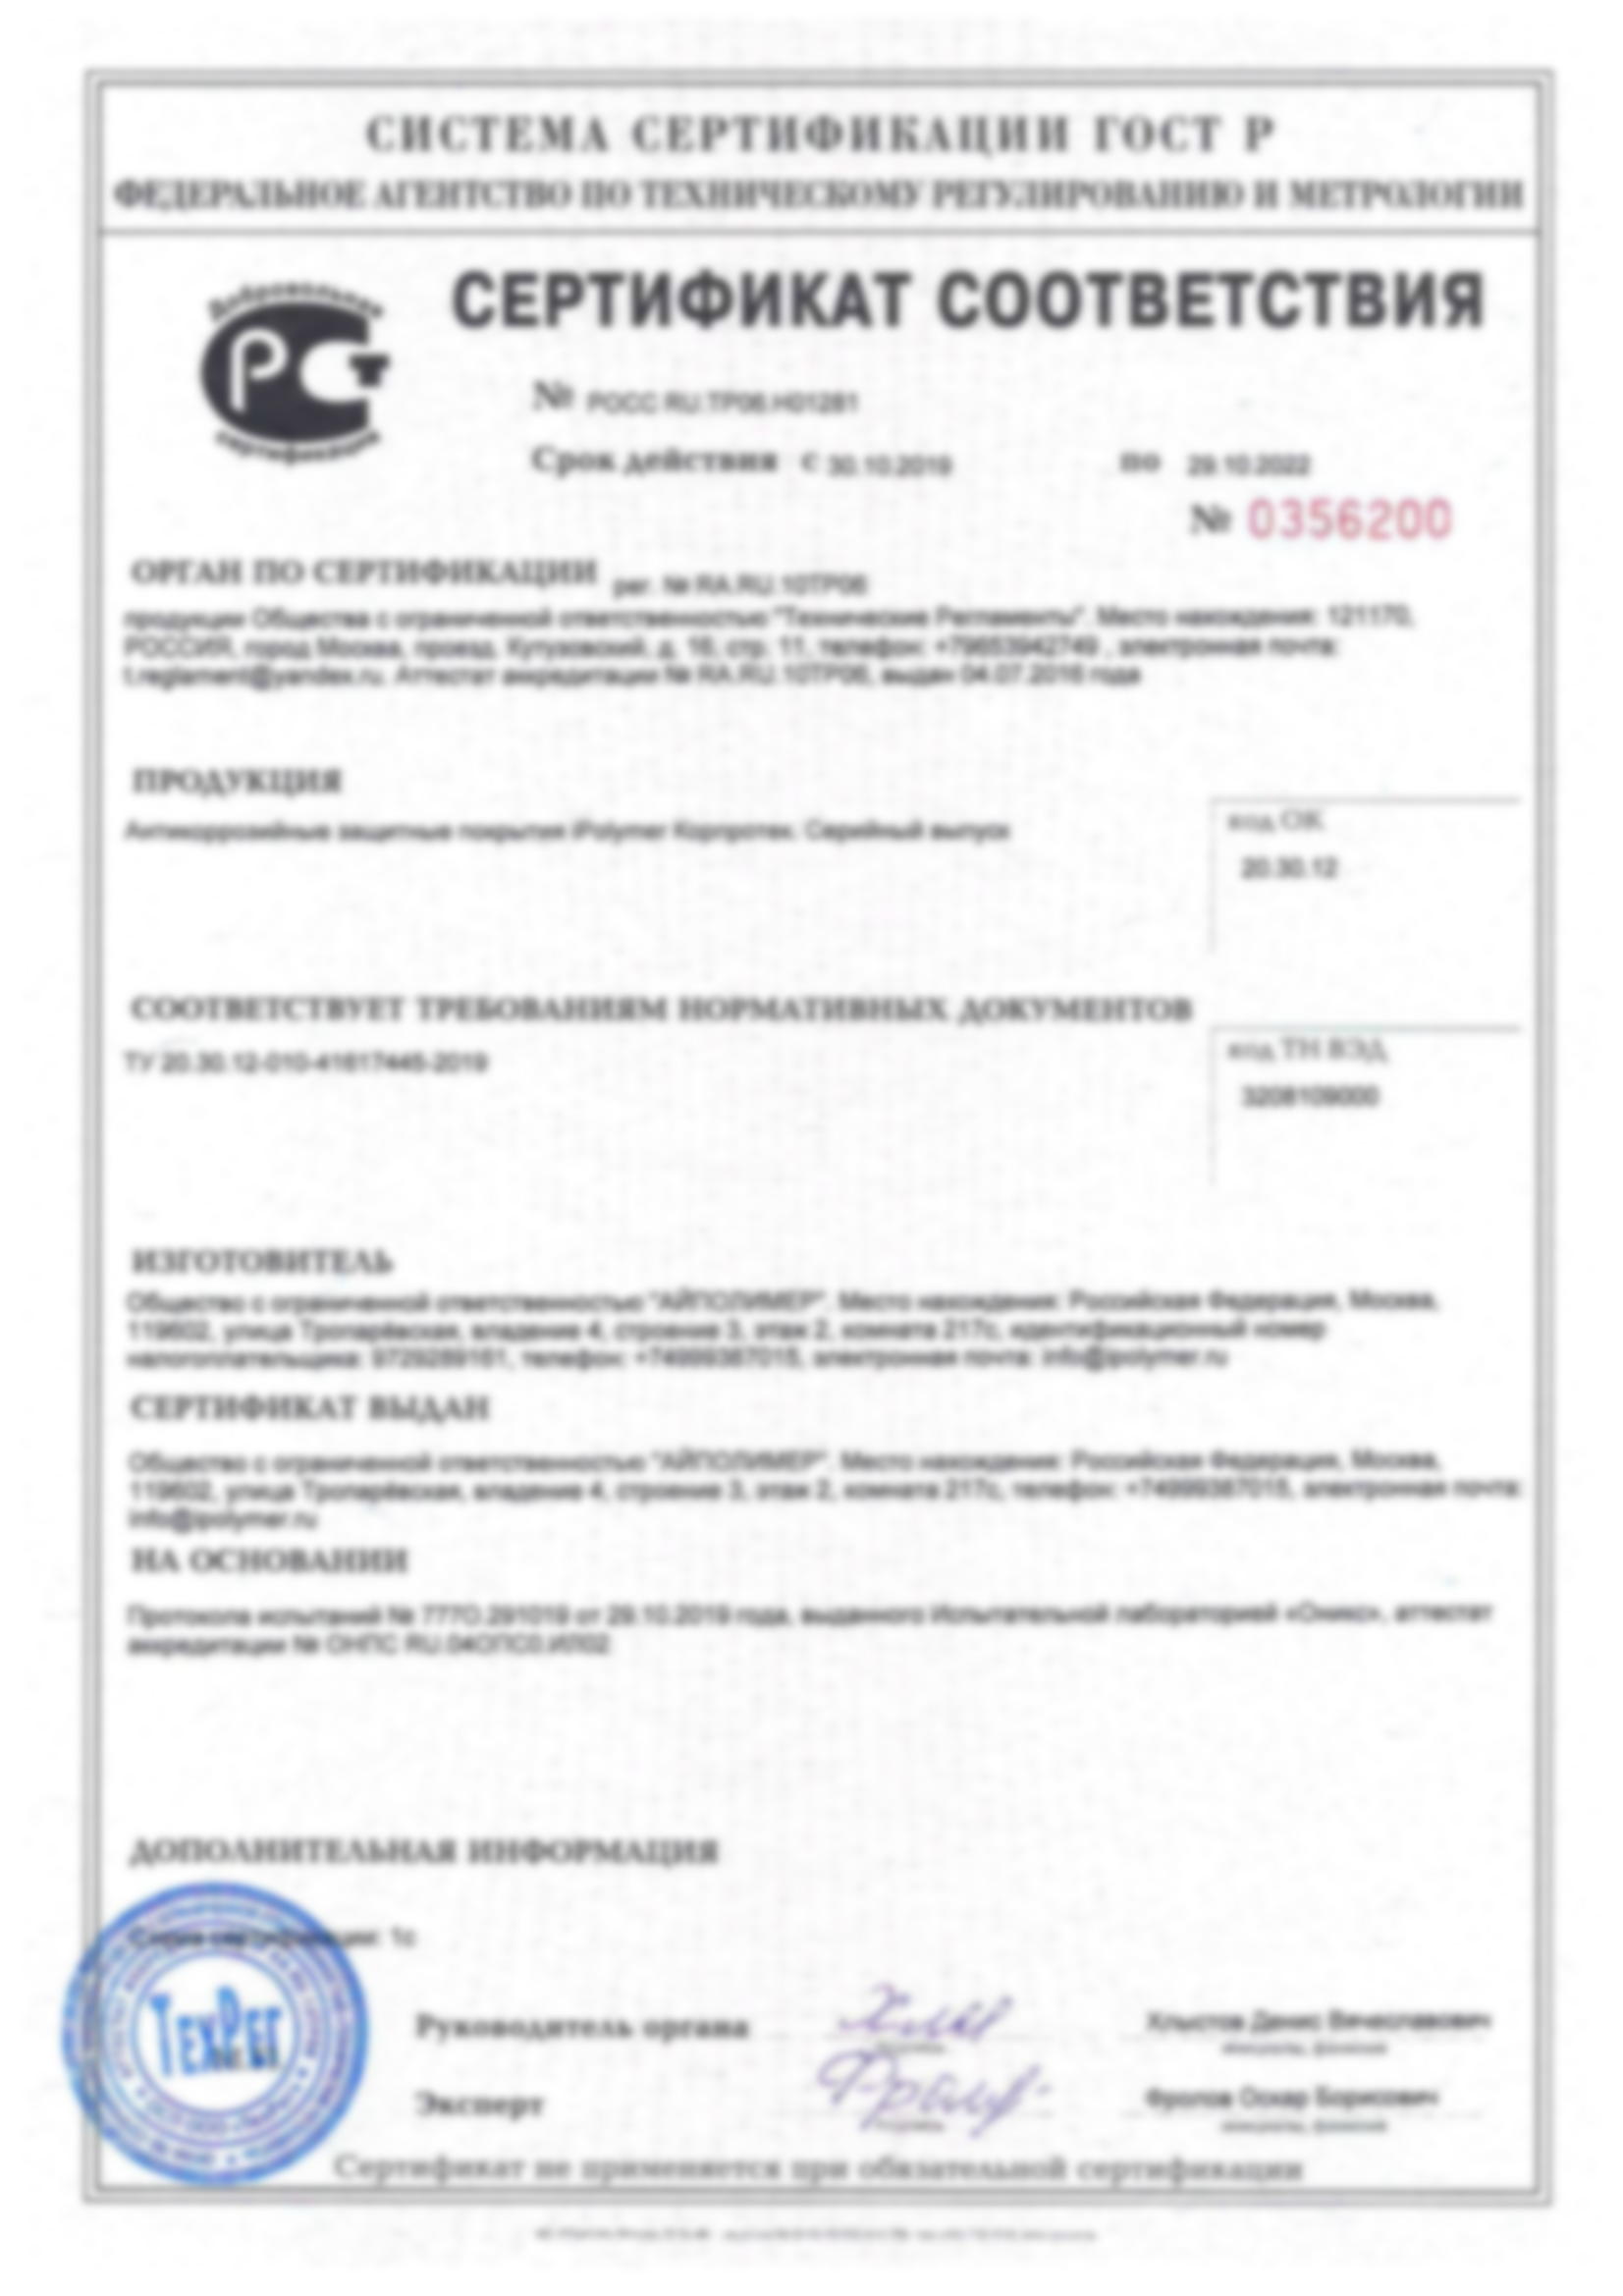 Сертификат соответствия Корппротек